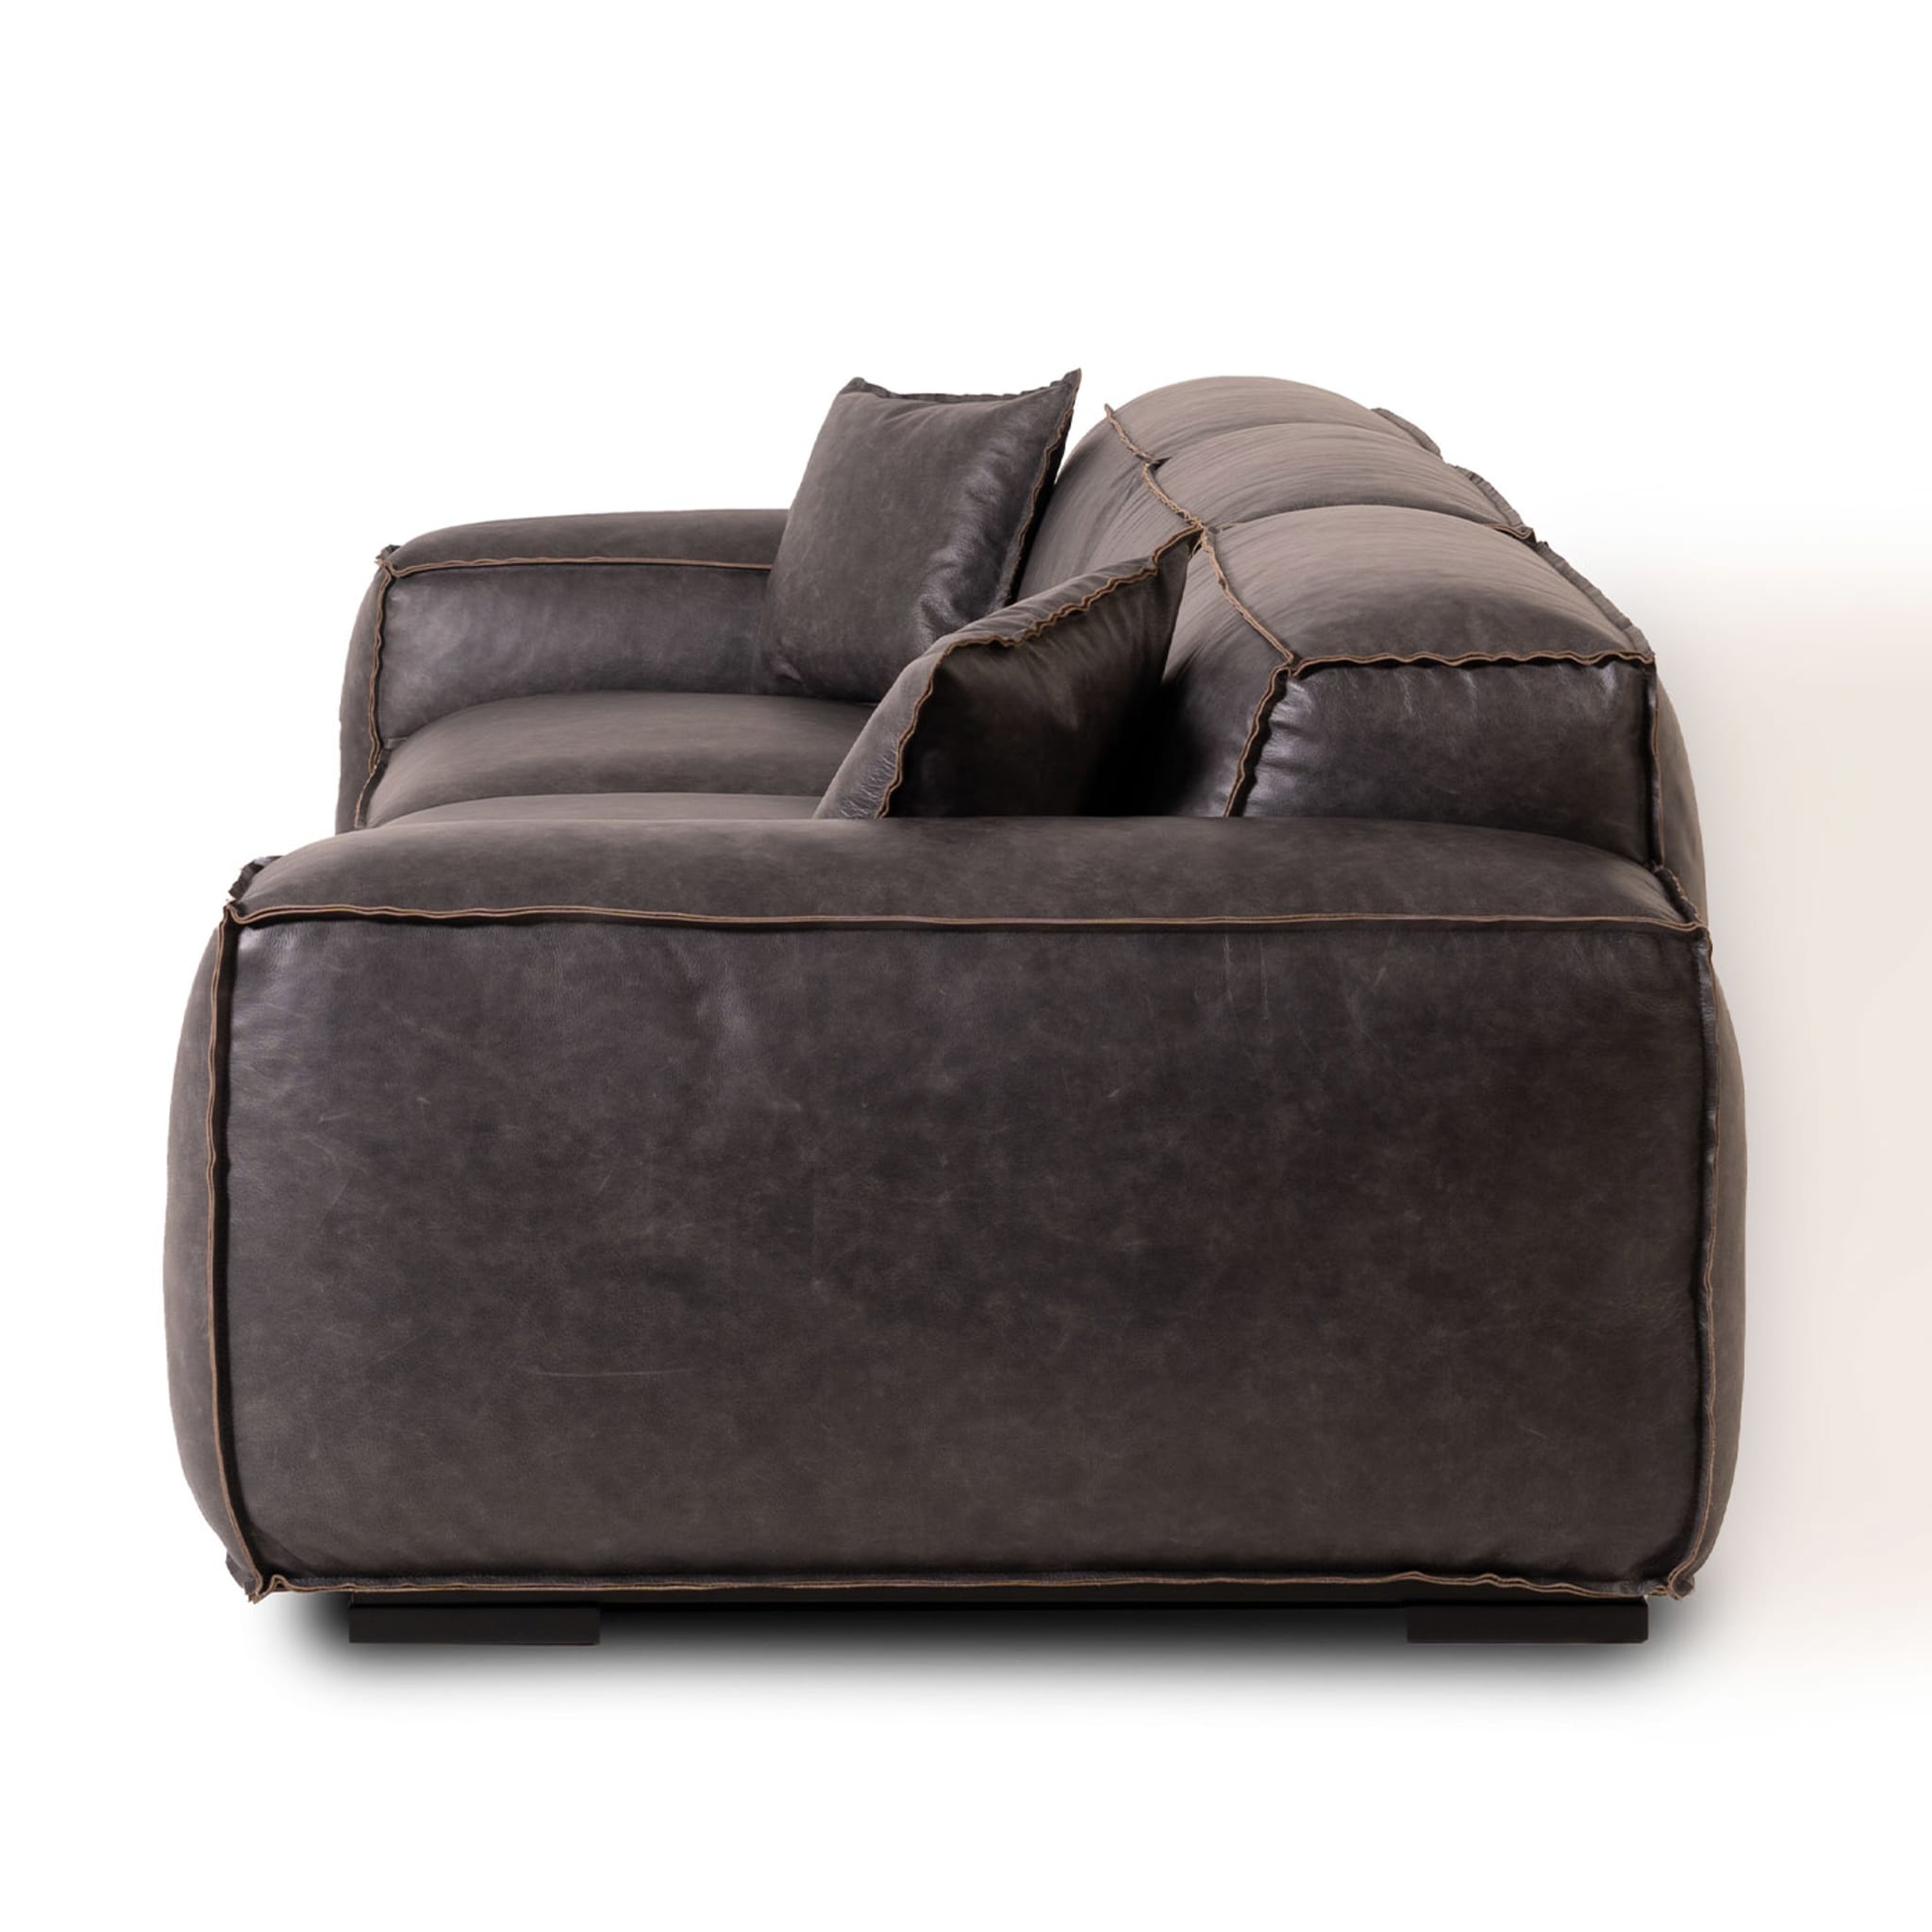 Placido 3 Seater Sofa Midi by Marco and Giulio Mantellassi - Alternative view 2